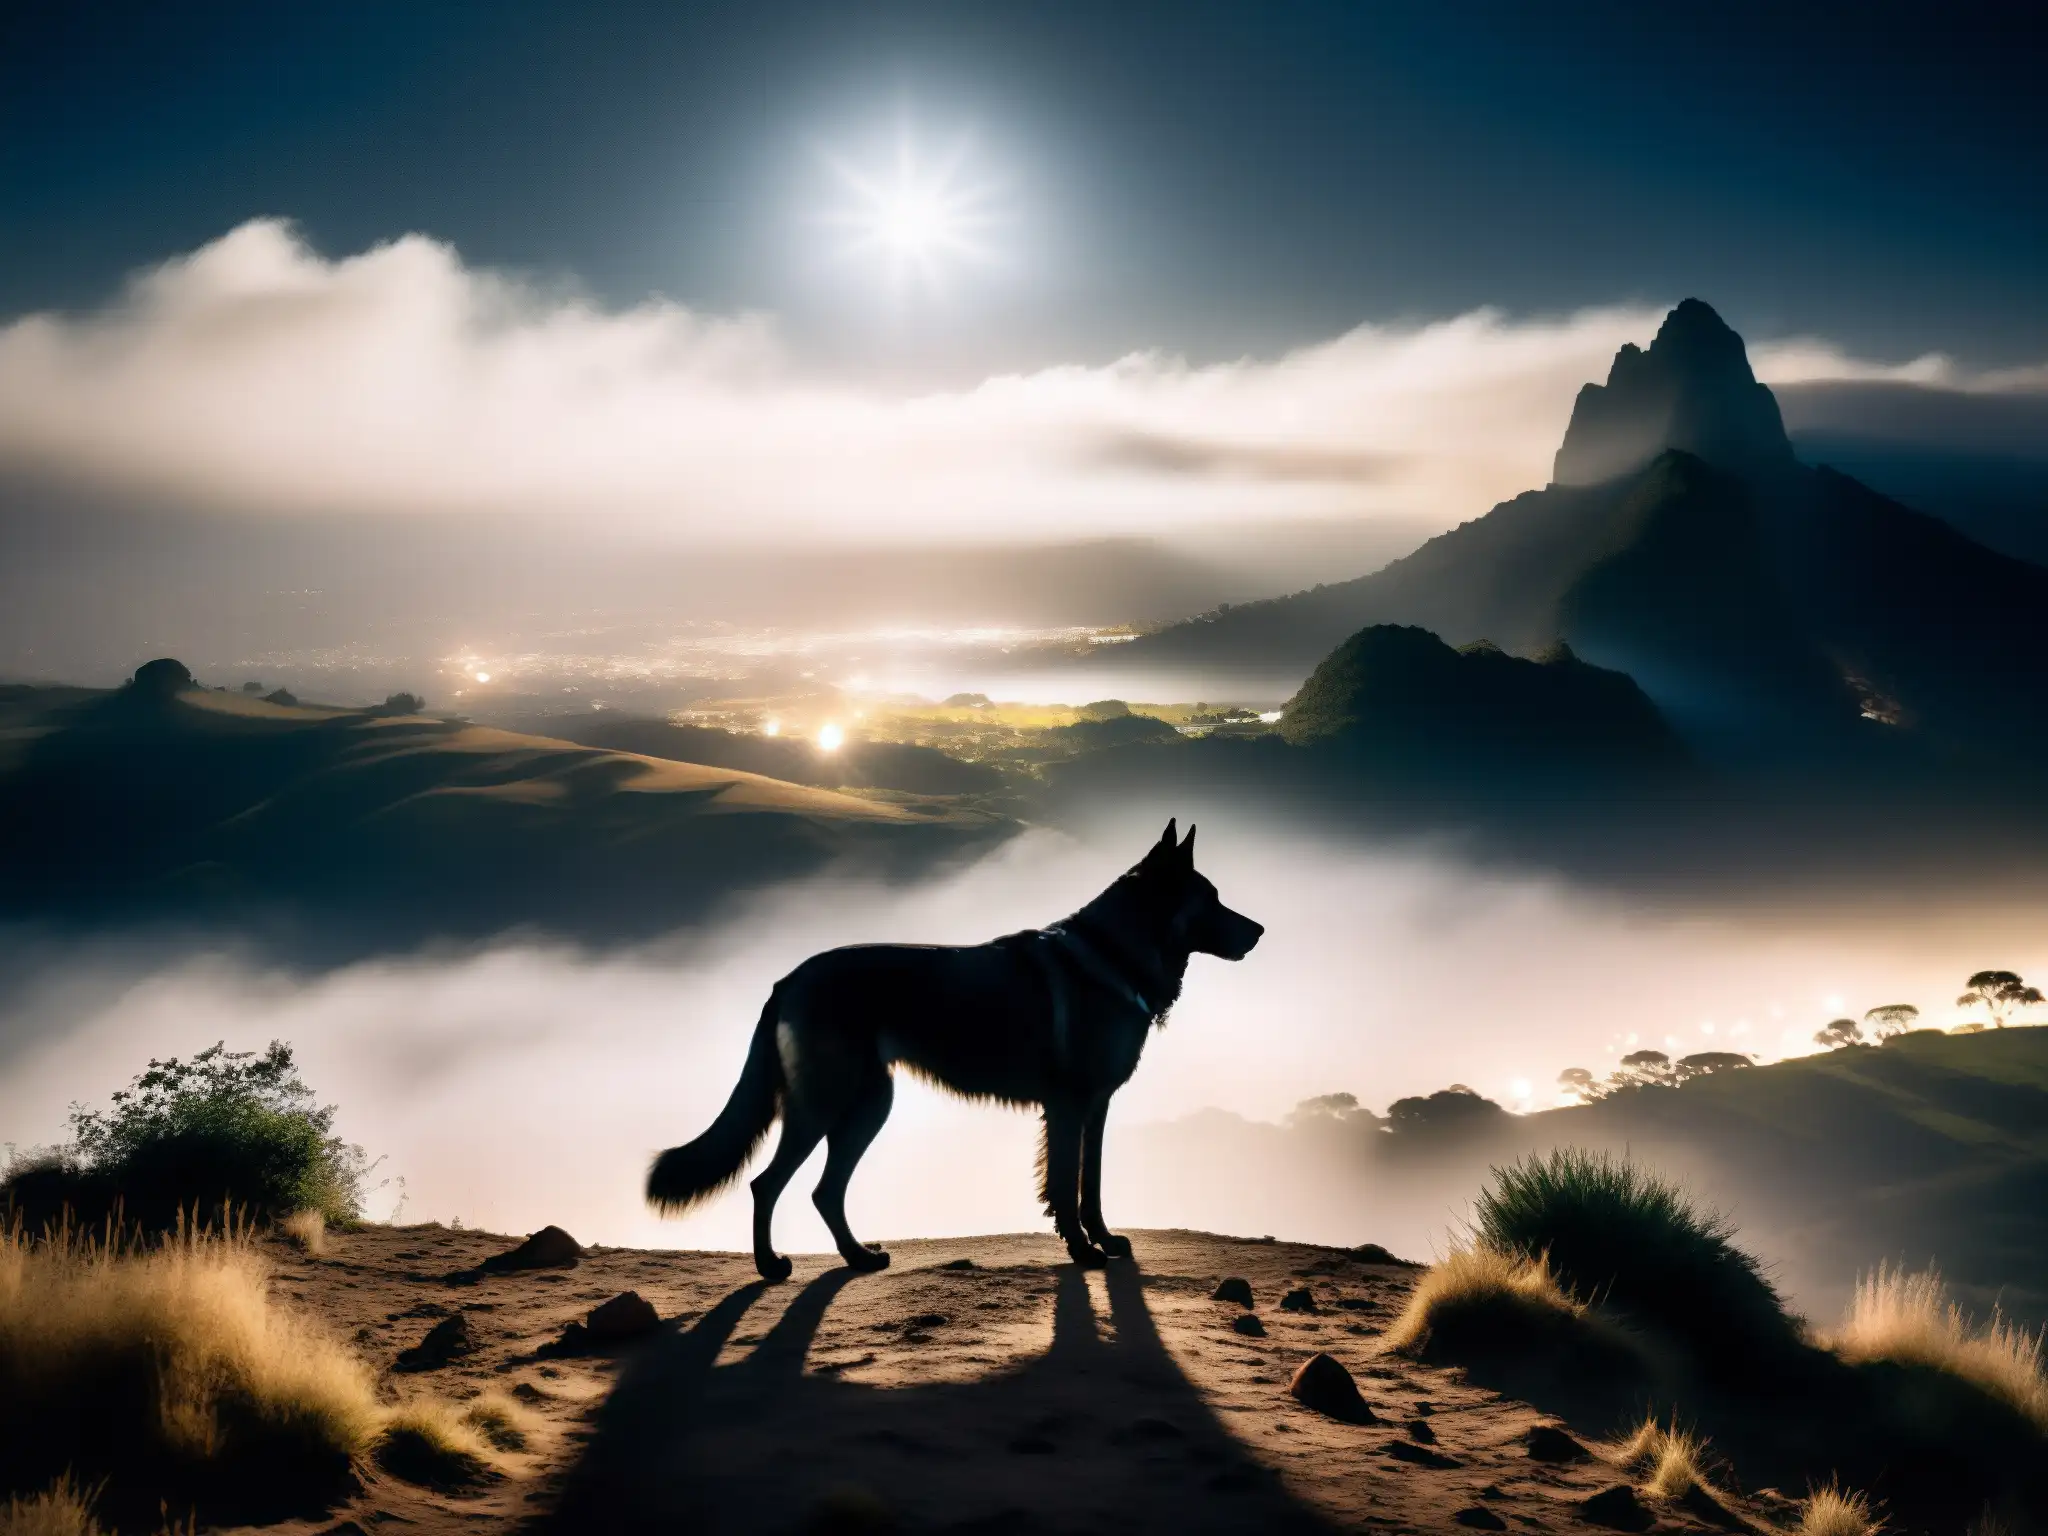 Un misterioso perro negro se alza bajo la luna en un paisaje sudamericano, exudando una presencia sobrenatural